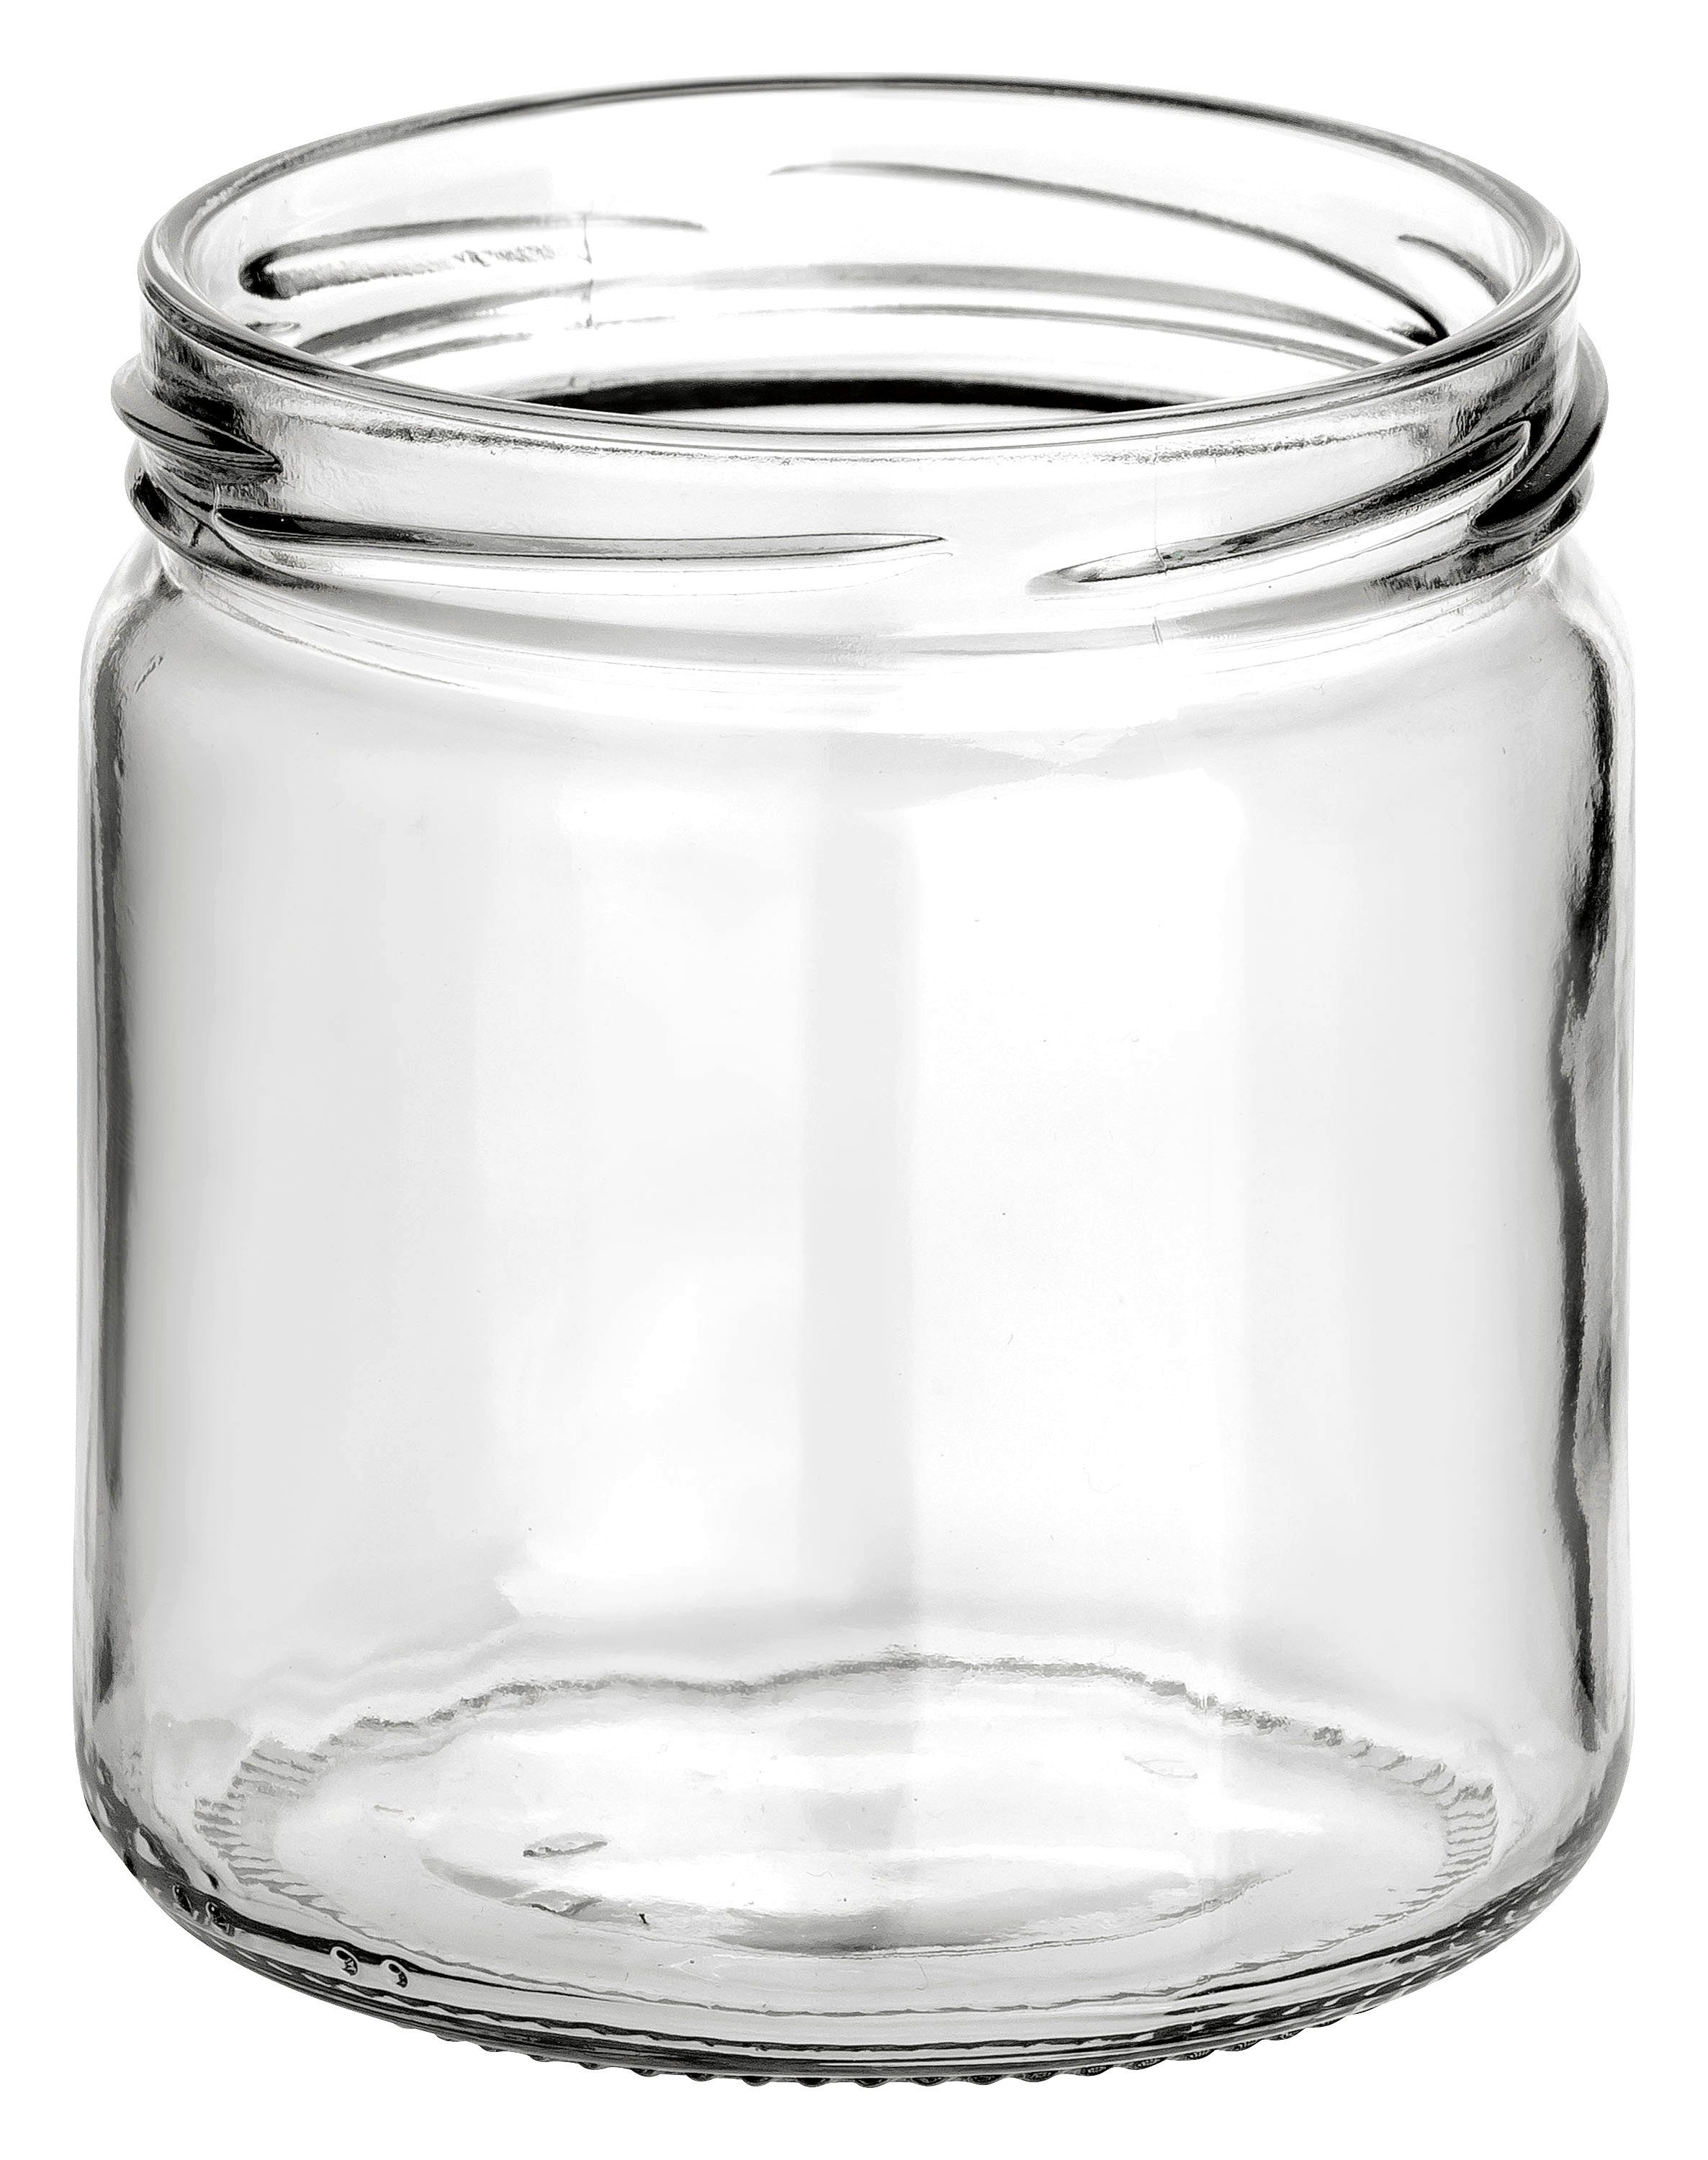 Schraub-Deckel gouveo Honigglas Honig, TO82 ml - 405 für Vorratsgläser Leere (12-tlg) goldfarben, Metall mit 500g